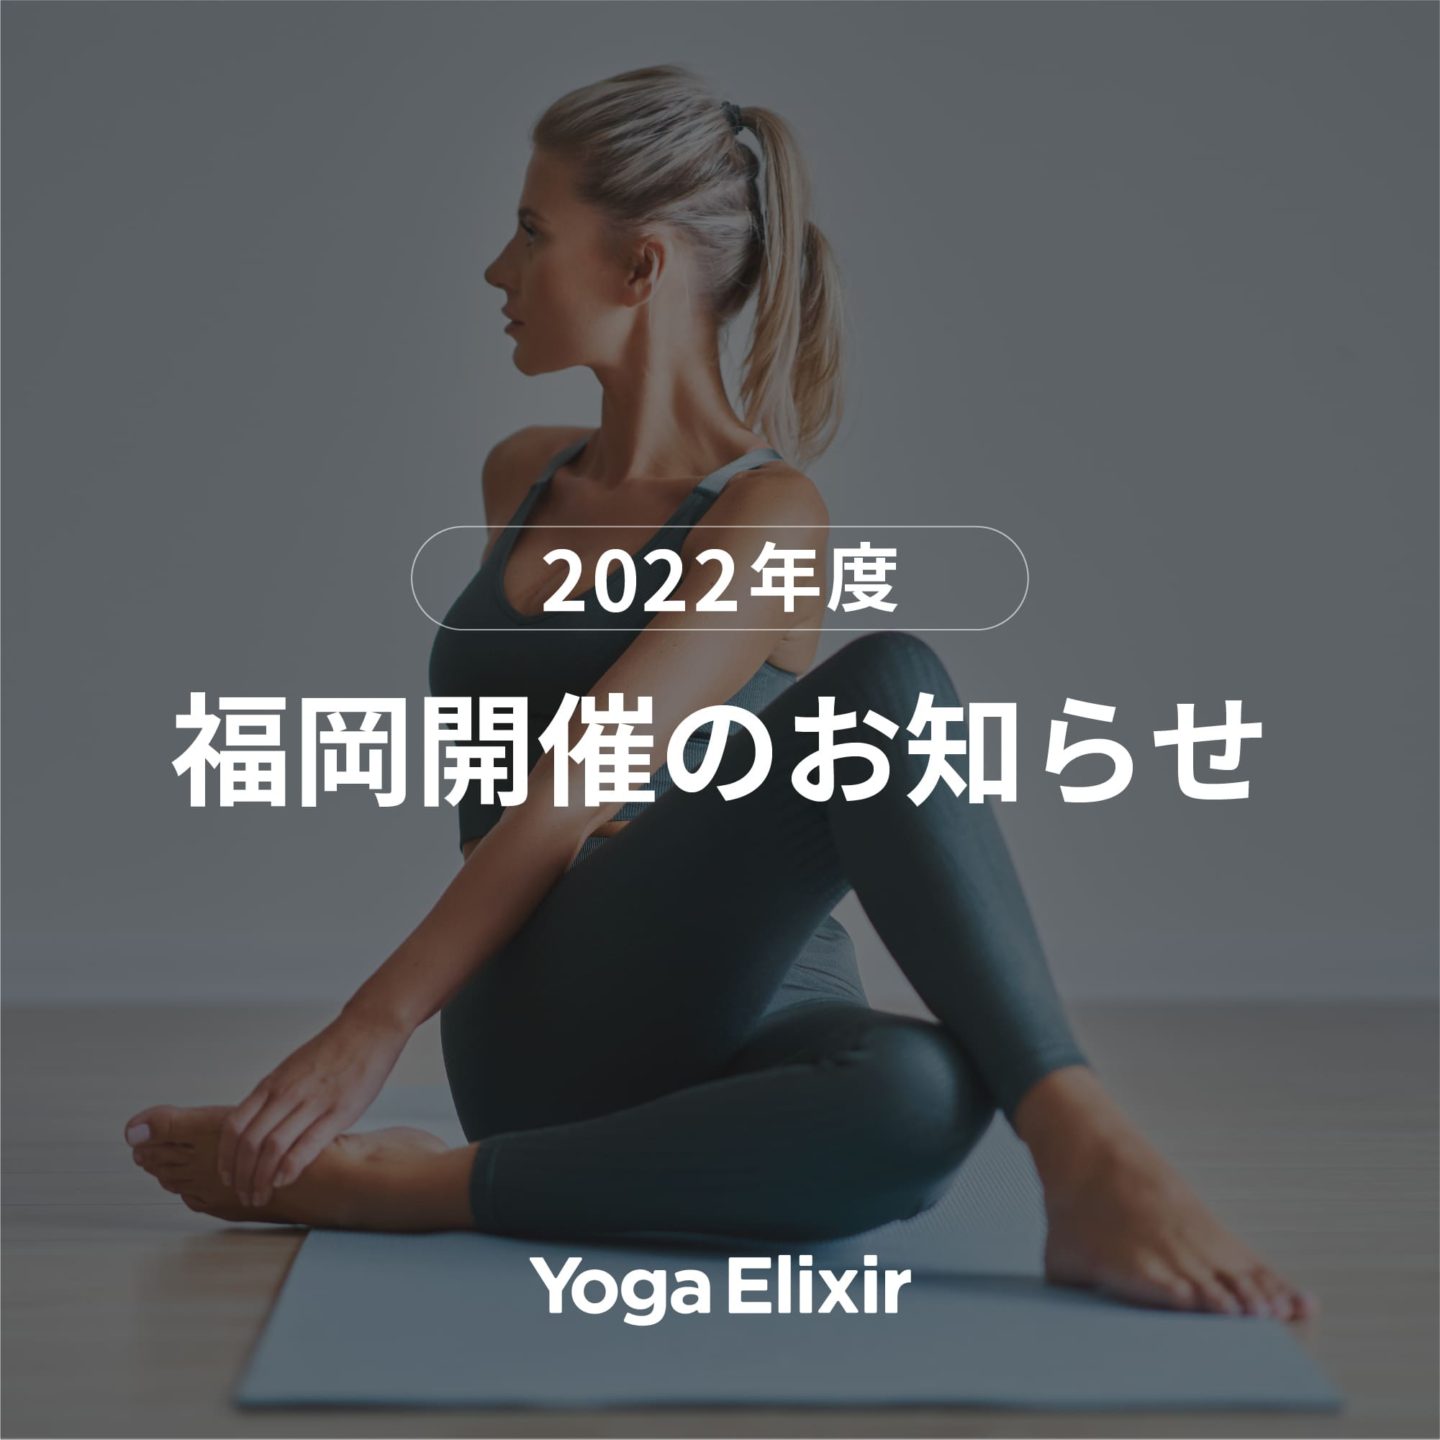 告知画像：【Yoga Elixir】第二期開催のお知らせ